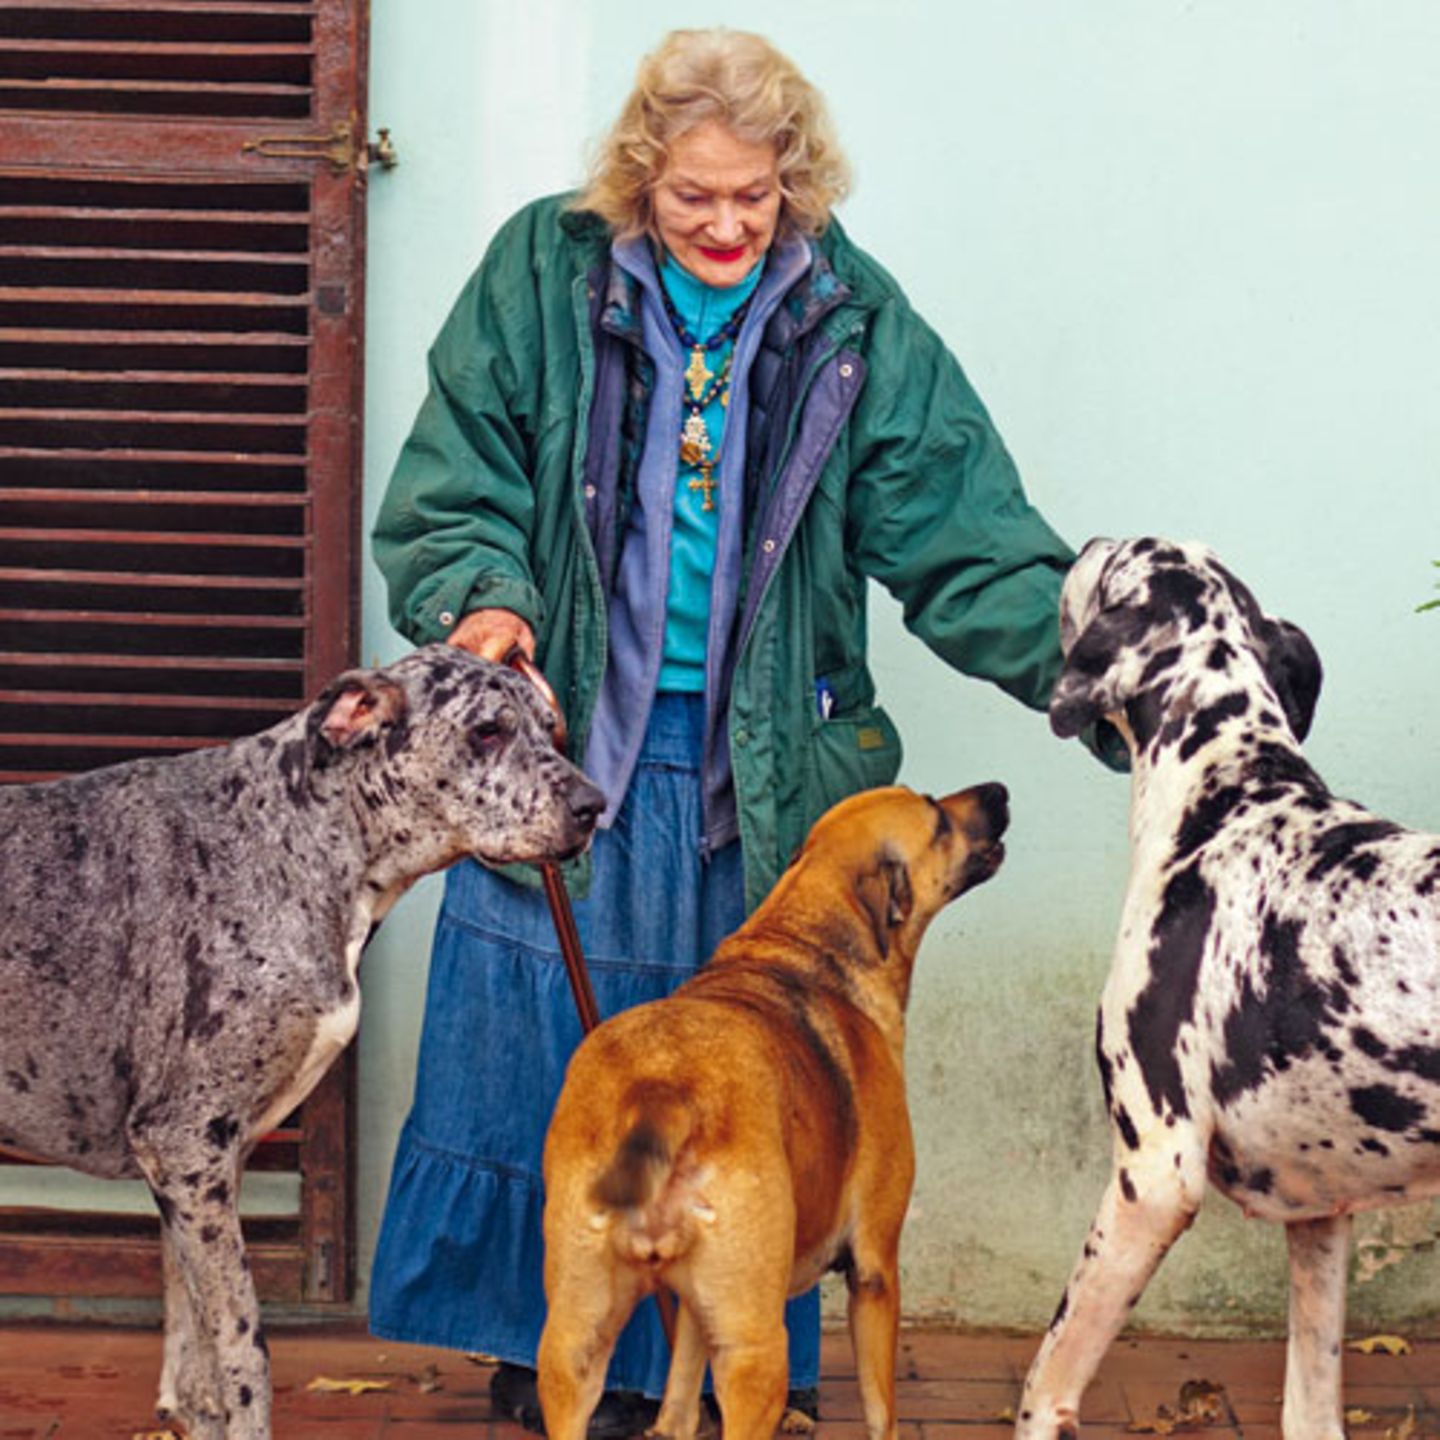 Doggen und Mischling sind immer in ihrer Nähe. Pat ohne Hunde - das wäre wie die Queen ohne Corgies.